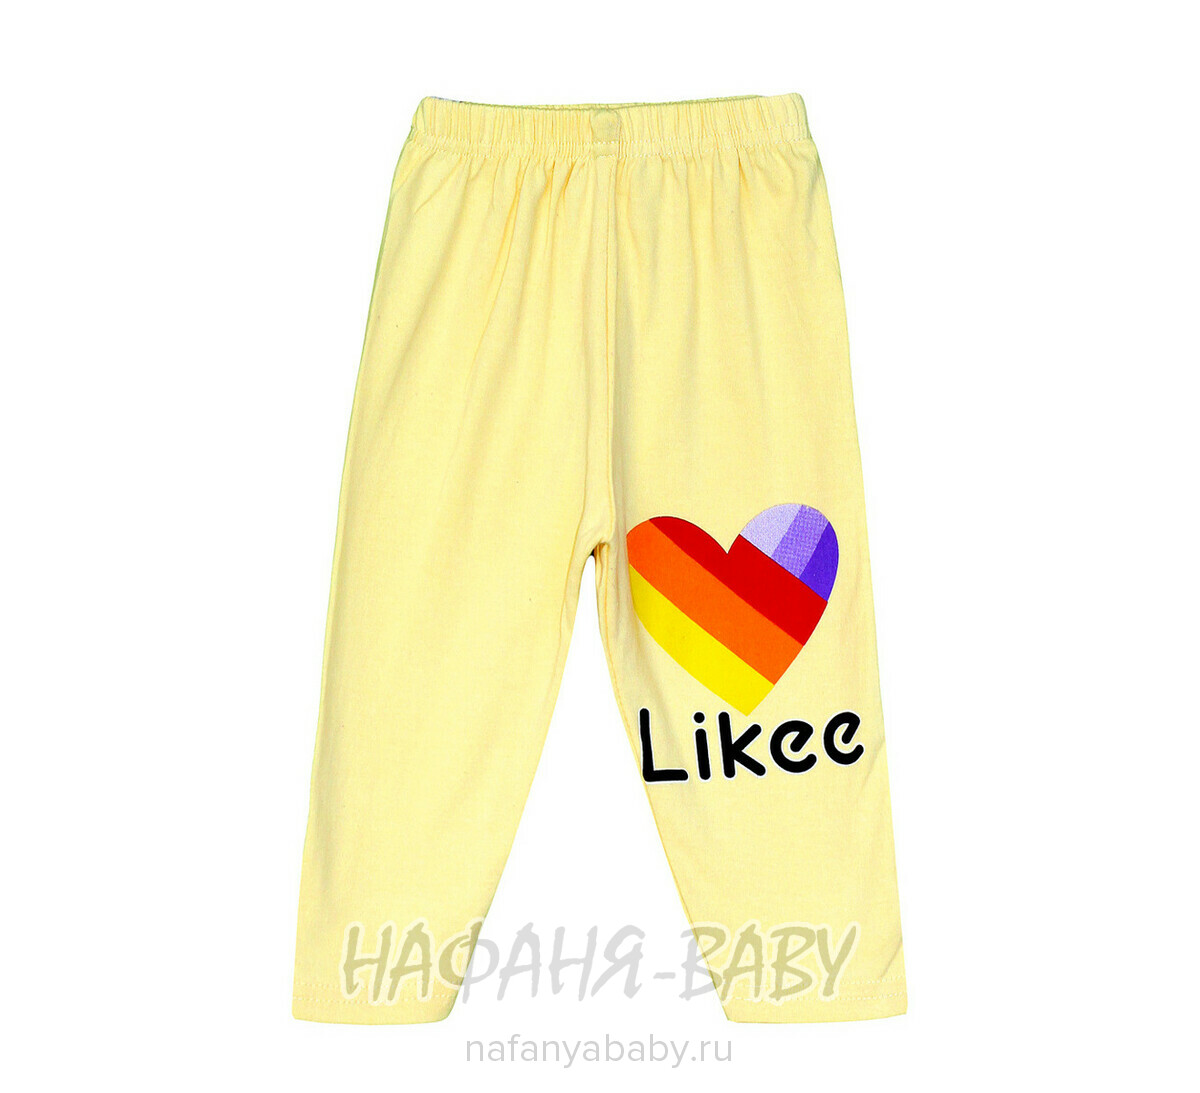 Детские лосины BASAK, купить в интернет магазине Нафаня. арт: 2550 желтый.